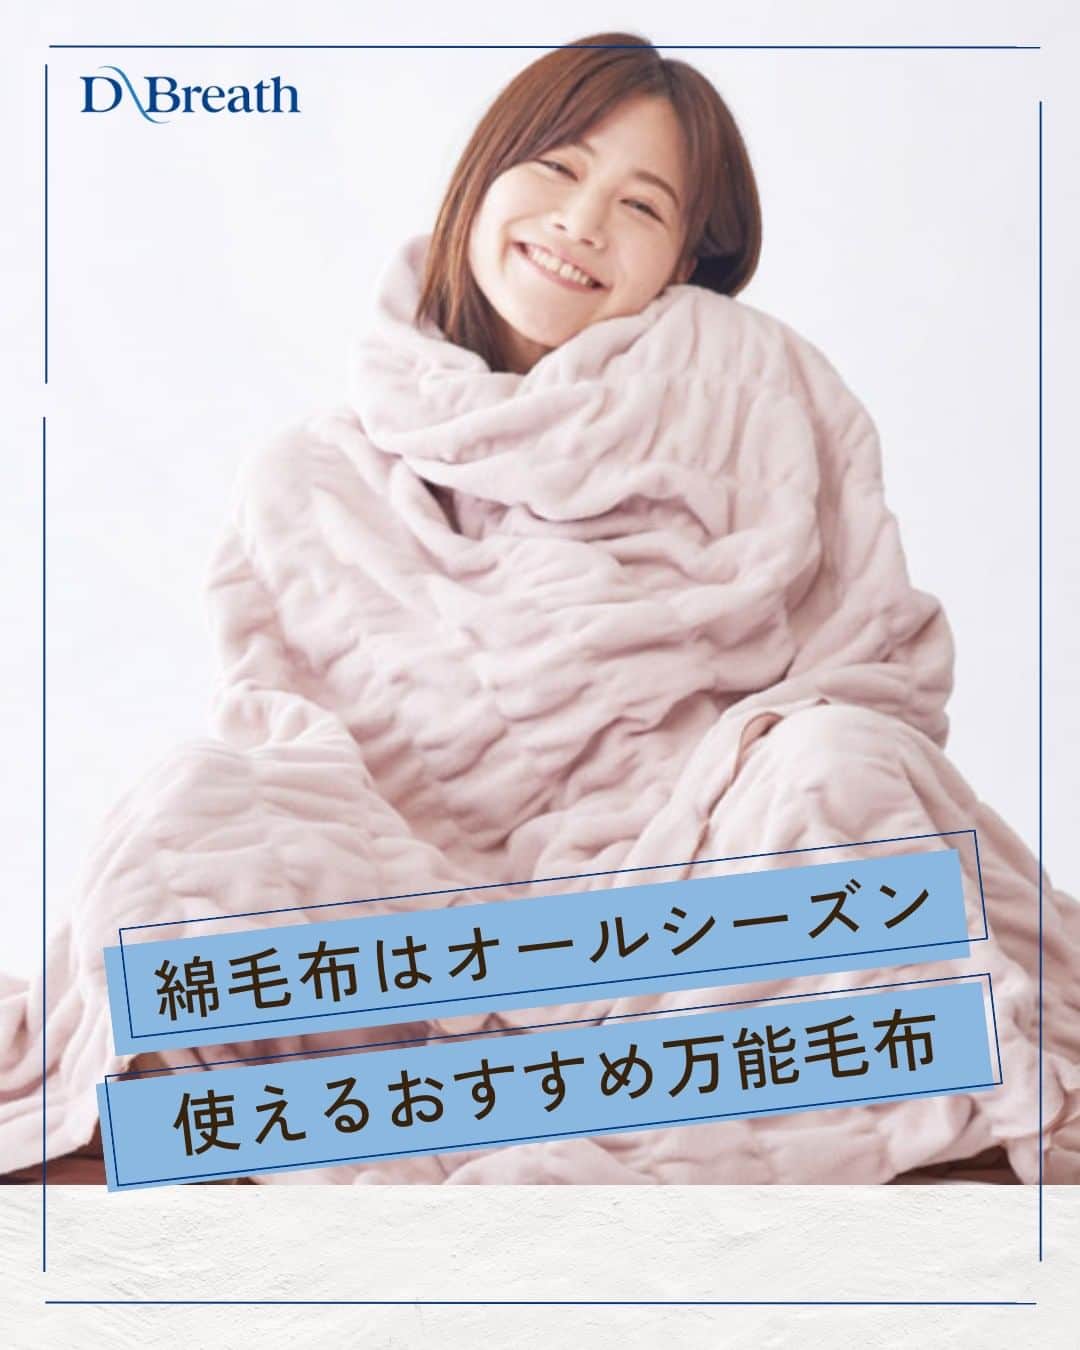 D-Breath Co., Ltd. のインスタグラム：「>>>続きをみる  こんばんは！ ディーブレスです！ @d_breath.co.jp  みなさんは「綿毛布」を使用したことはありますか？ 綿毛布は、天然繊維でお肌に優しく、静電気も起こりにくいのが魅力的✨ 寝具内を適度な温度と湿度に調整してくれるため、 蒸れたり暑すぎて毛布を蹴っ飛ばすなんてこともなくなりそうです🛏  そんな綿毛布の中でもぜひおすすめしたいのが、 浅野撚糸の「スーパーゼロ」を使用し、特許取得製法で作られた ZEPPINハグウォーム掛け毛布です！ ZEPPINハグウォーム掛け毛布は、繊維一本一本の間に空気をたっぷり含んでいて、ふんわりボリュームがあるので軽くて柔らか。 また、繊維に吸湿発熱性があるため、一般的な綿毛布に比べて保温性が高いのも特徴的です。 伸縮性も抜群で、体にグーンとフィット！吸放湿性が良く蒸れにくく快適な寝心地です。 ふんわり軽くて柔らかいZEPPINハグウォーム掛け毛布で、 快適な睡眠を手に入れてみてはいかがでしょうか？  ┄ ┄ ┄ ┄ ┄ ┄ ┄ ┄ ┄ ┄ ┄ ┄ ┄  どこよりも気持ちいい寝具を目指す🌙  ディーブレスという社名は、 DEEP BREATH＝深呼吸という言葉から生まれました。  あわただしい暮らしの中で、深呼吸するように、 ゆったりとした時を過ごしていただきたいという想いから、 様々な心安らぐアイテムを開発しています。  ┄ ┄ ┄ ┄ ┄ ┄ ┄ ┄ ┄ ┄ ┄ ┄ ┄ このアカウントでは ・起きたばかりなのに身体がだるおも ・夜なかなか寝付けない ・朝スッキリ起きれない  という方に向けて 睡眠の知識を発信中！  ＼フォローして最上級の眠りを手に入れる／ @d_breath.co.jp  #自律神経 #睡眠 #睡眠の改善 #睡眠不足 #快眠 #更年期 #ストレス #疲労回復 #肩こり解消 #自律神経失調症 #自律神経ケア #自律神経を整える #ストレスケア #ディーブレス #寝具 #ZEPPIN #ハグウォーム #掛け毛布 #綿毛布 #ふわふわ #毛布 #ふわふわ毛布」